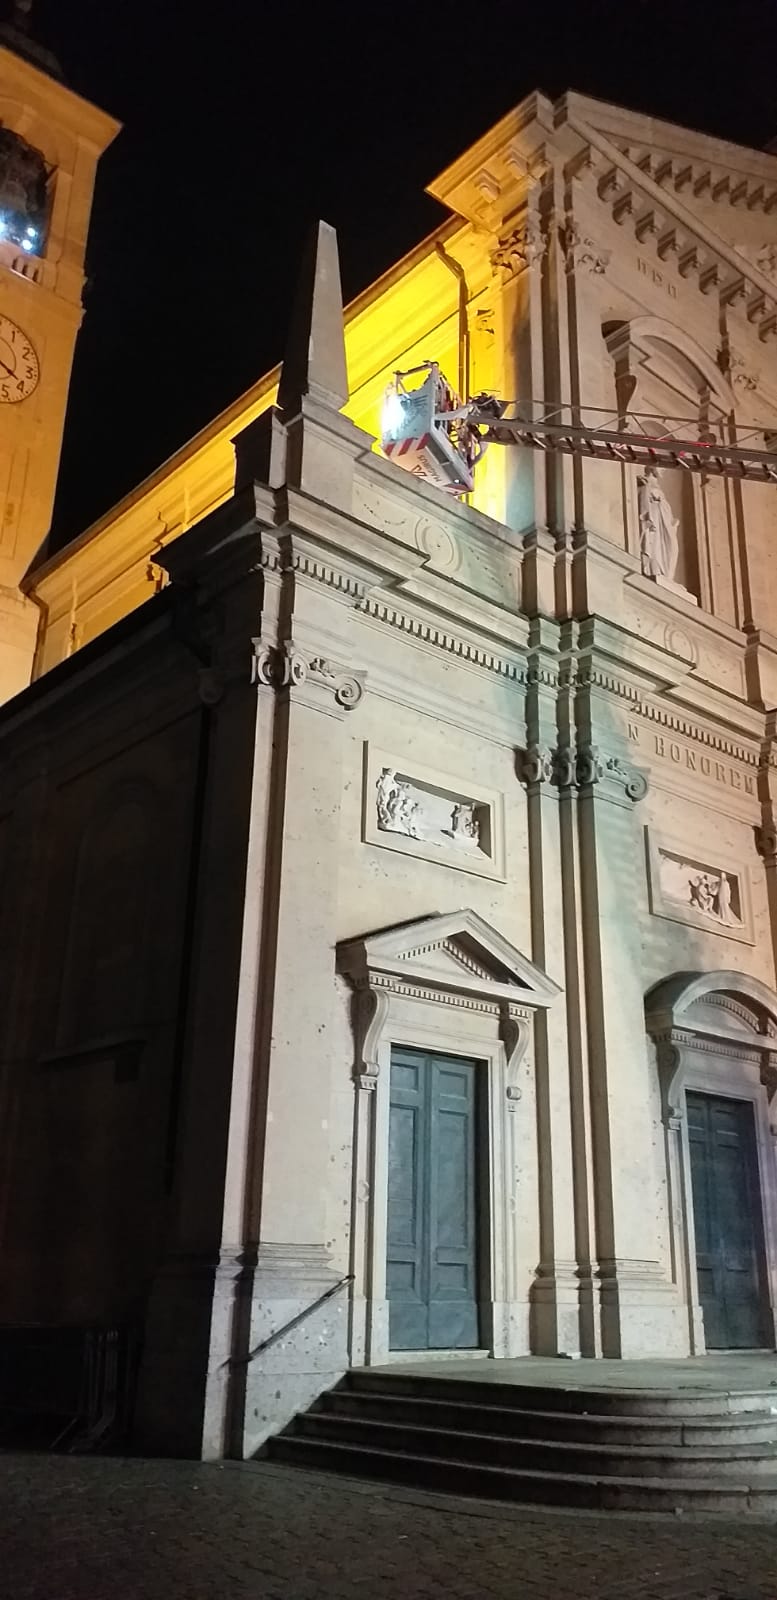 Saronno, ventenne ubriaco sul tetto della chiesa Prepositurale. Salvato da pompieri e carabinieri